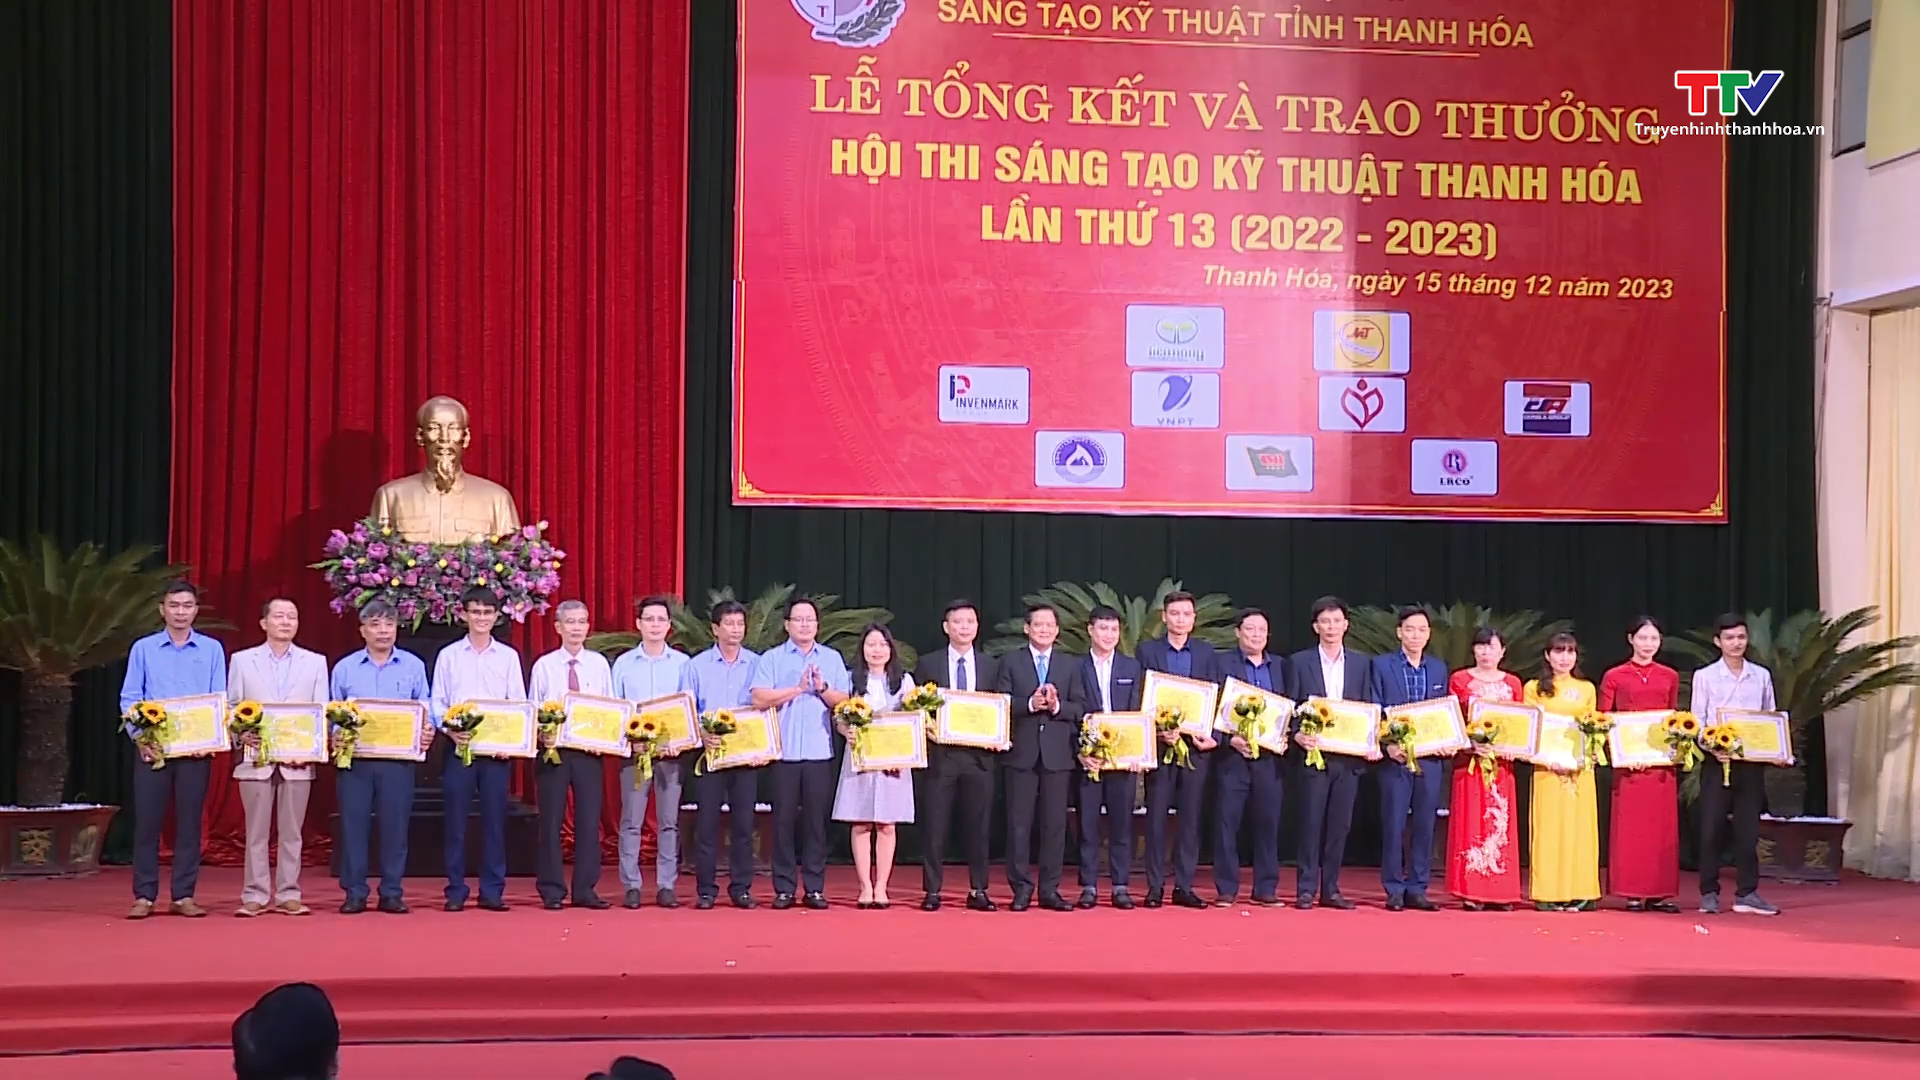 Tổng kết và trao thưởng Hội thi Sáng tạo kỹ thuật Thanh Hoá lần thứ 13 (2022 - 2023)- Ảnh 5.